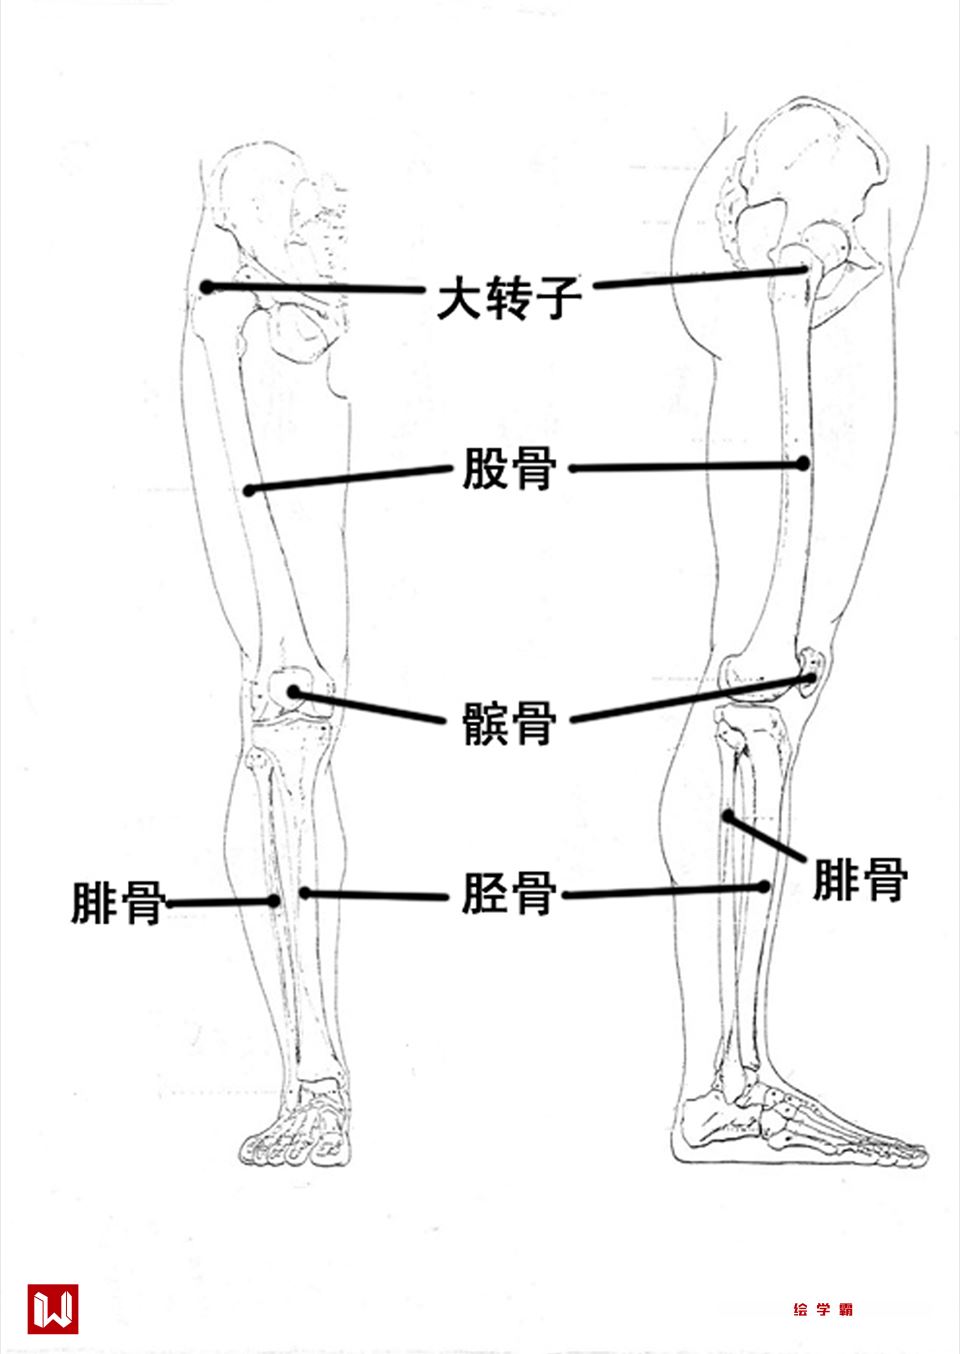 腿部接的组成结构由大腿的股直肌 ,股外肌,缝匠肌和小腿的腓肠肌